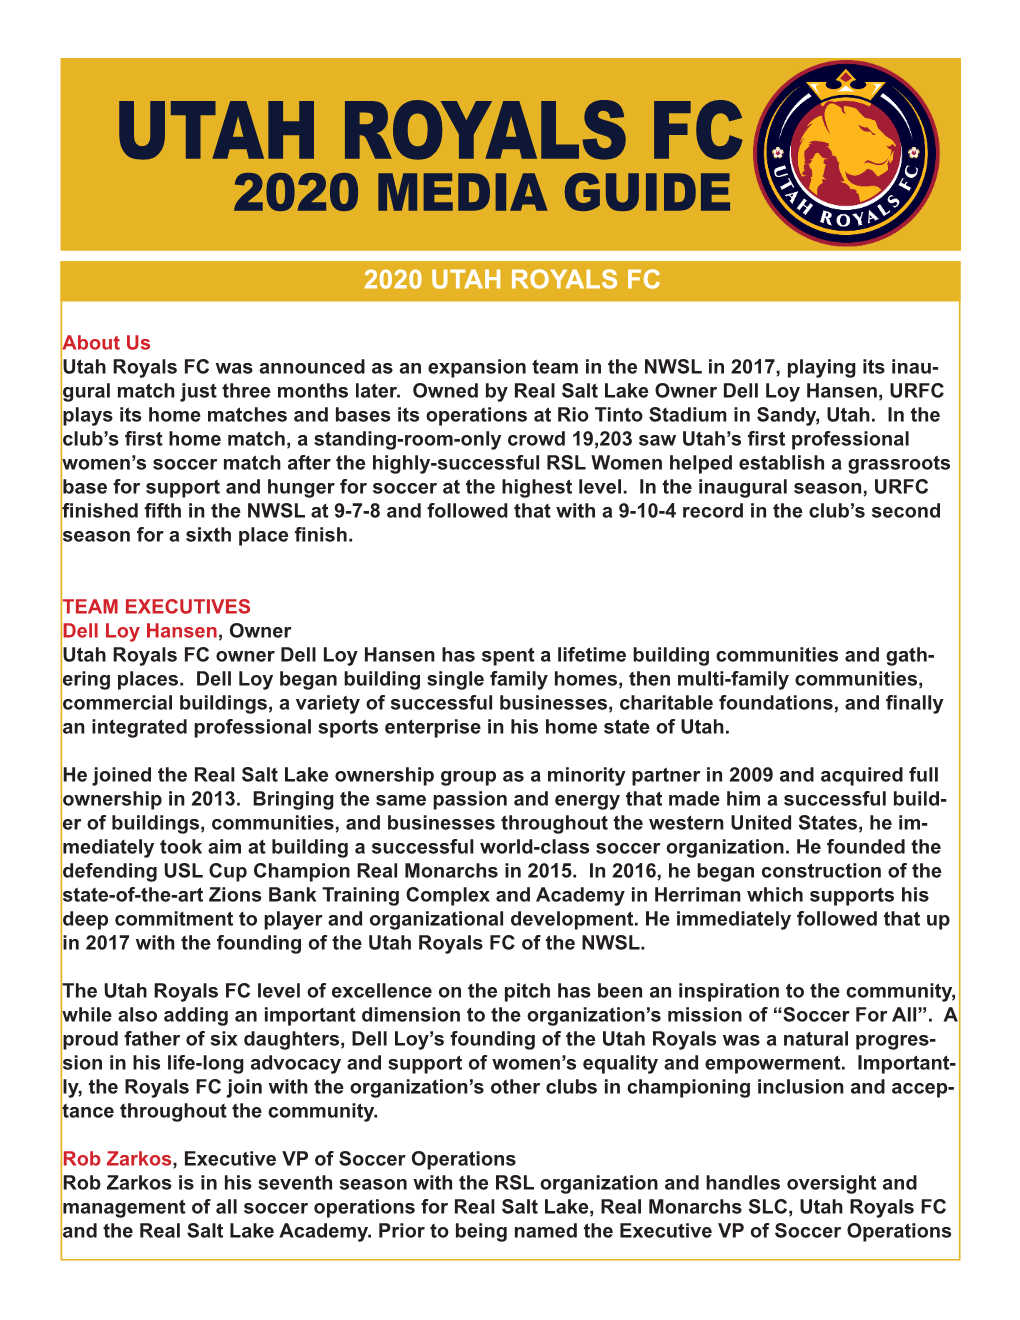 Utah Royals Fc 2020 Media Guide